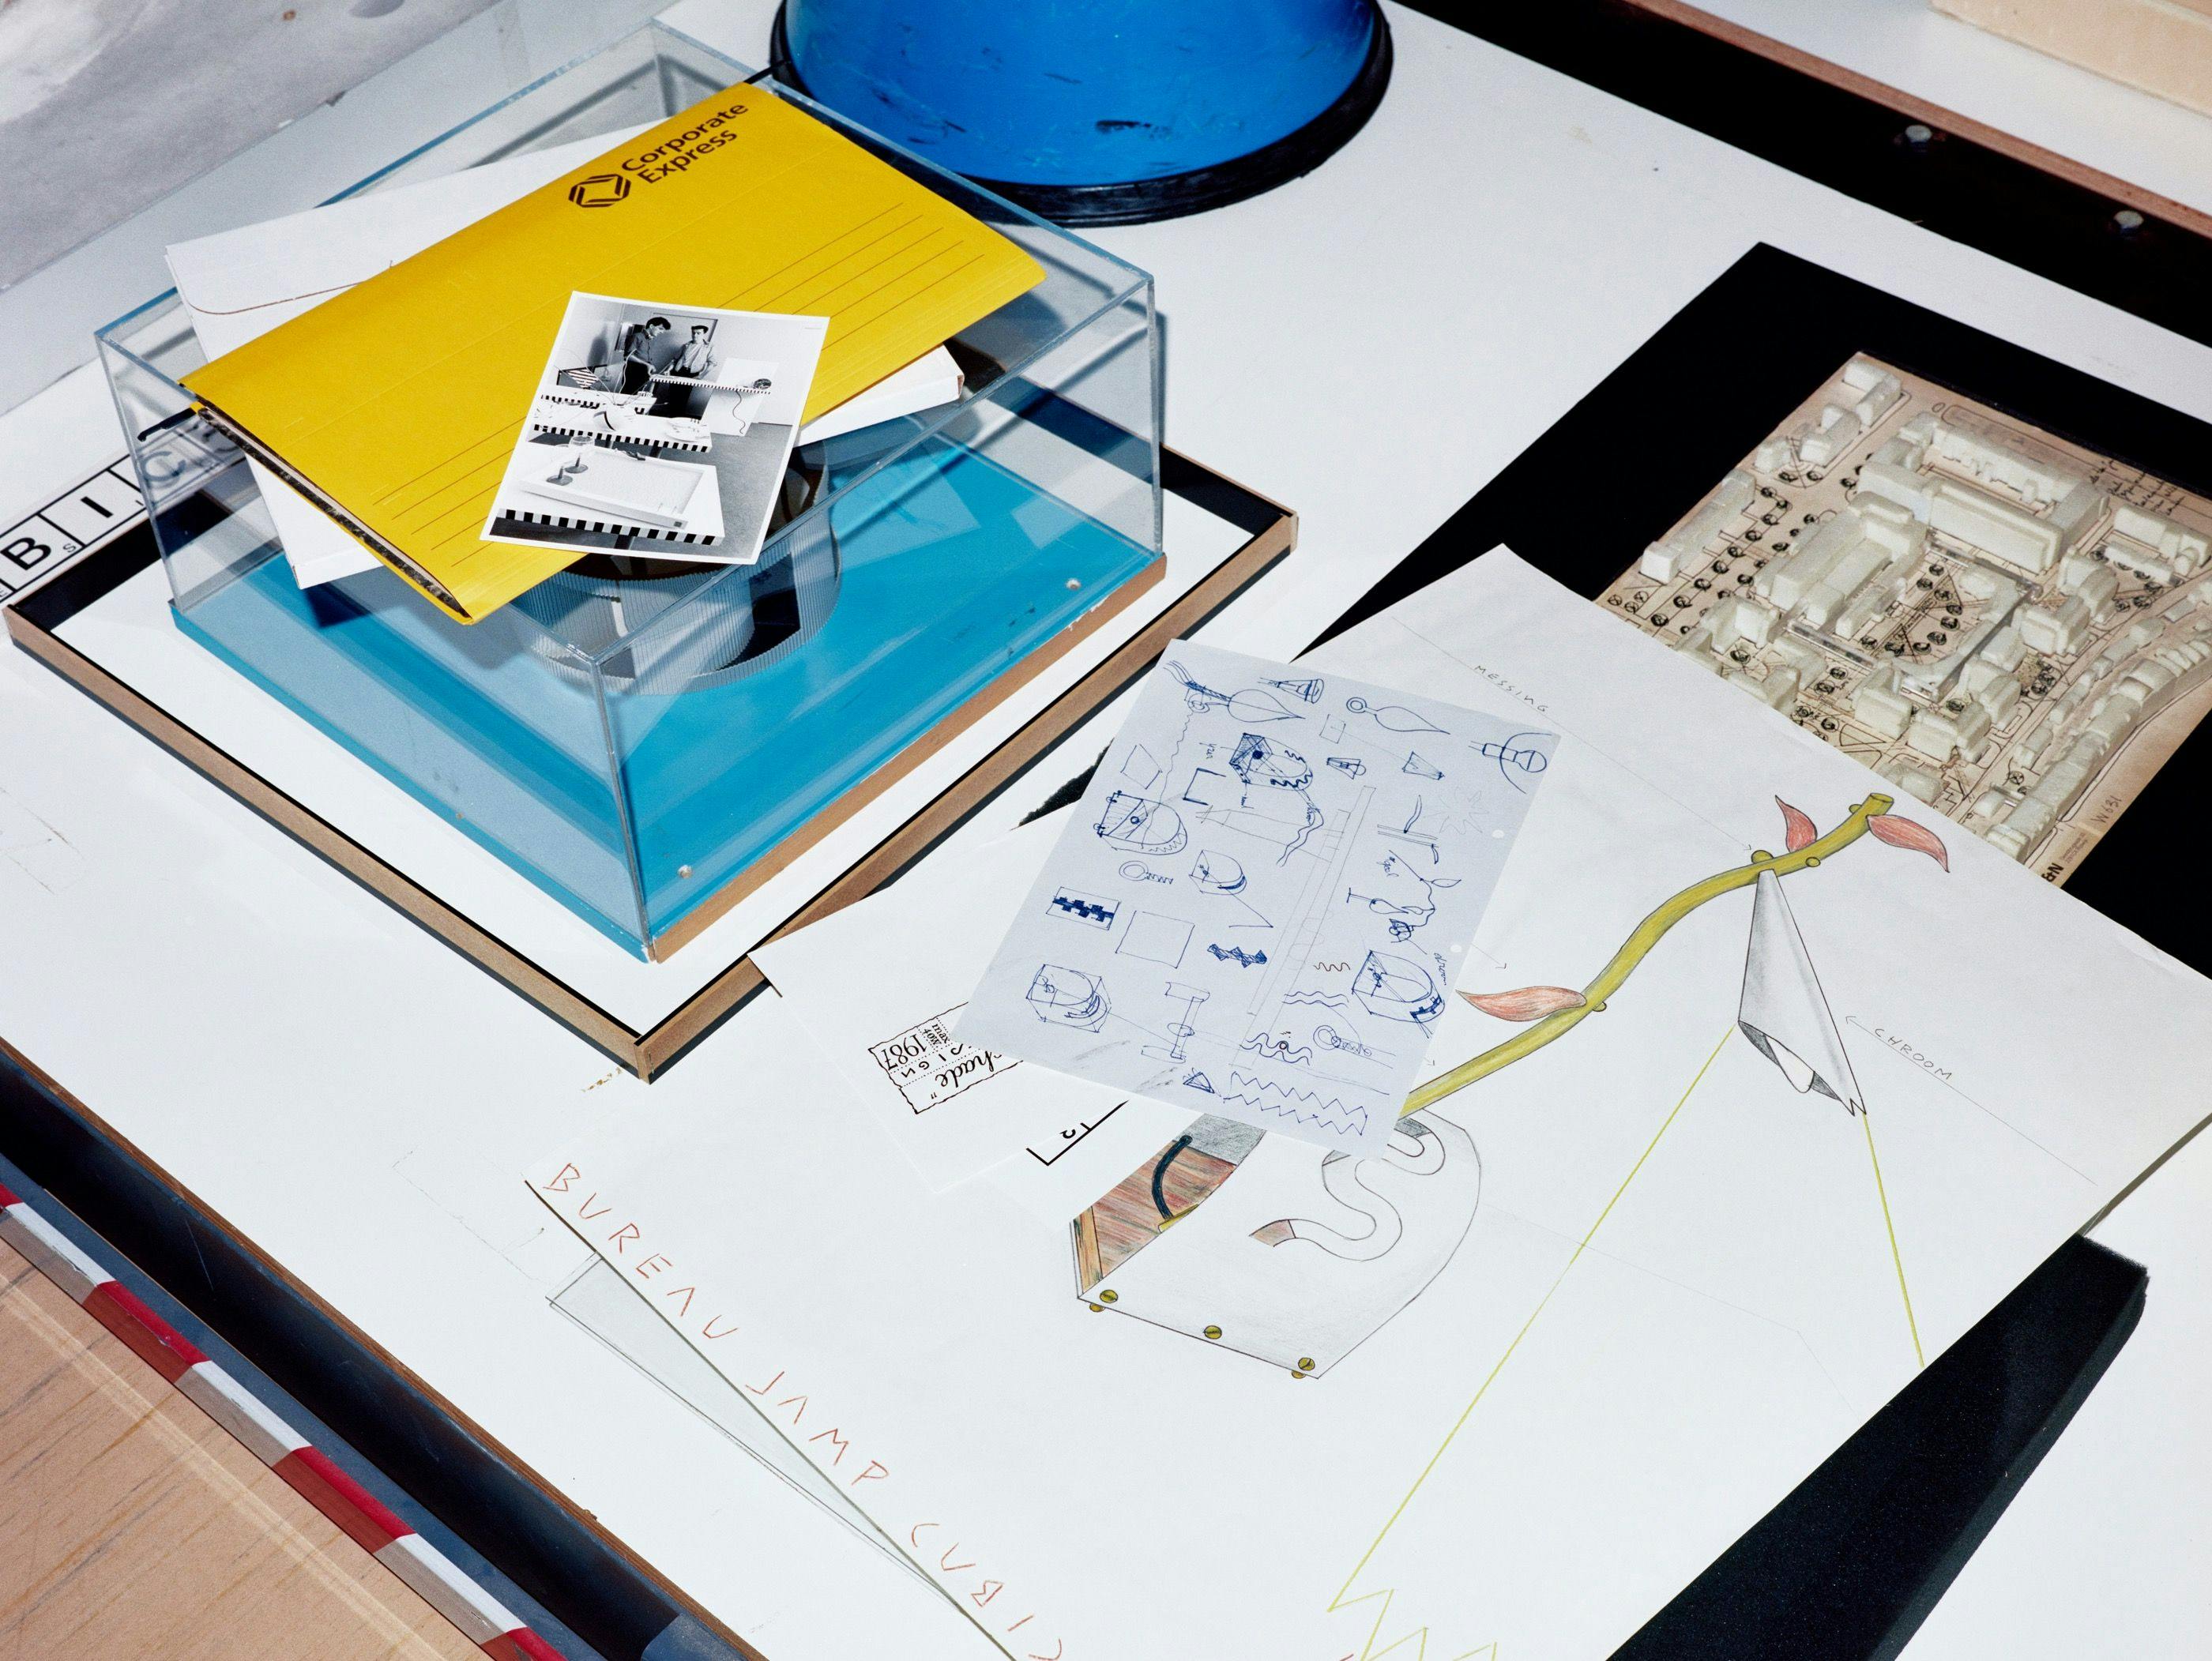 Cubic3 Design, archiefmateriaal, waaronder schetsen voor bureaulamp Nachtschade. Bruikleen uit het archief van Cubic3 Design (Ton Hoogerwerf en Gerwin van Vulpen). Vastgelegd voor Speculatief Design Archief, Het Nieuwe Instituut, Rotterdam 2018… 